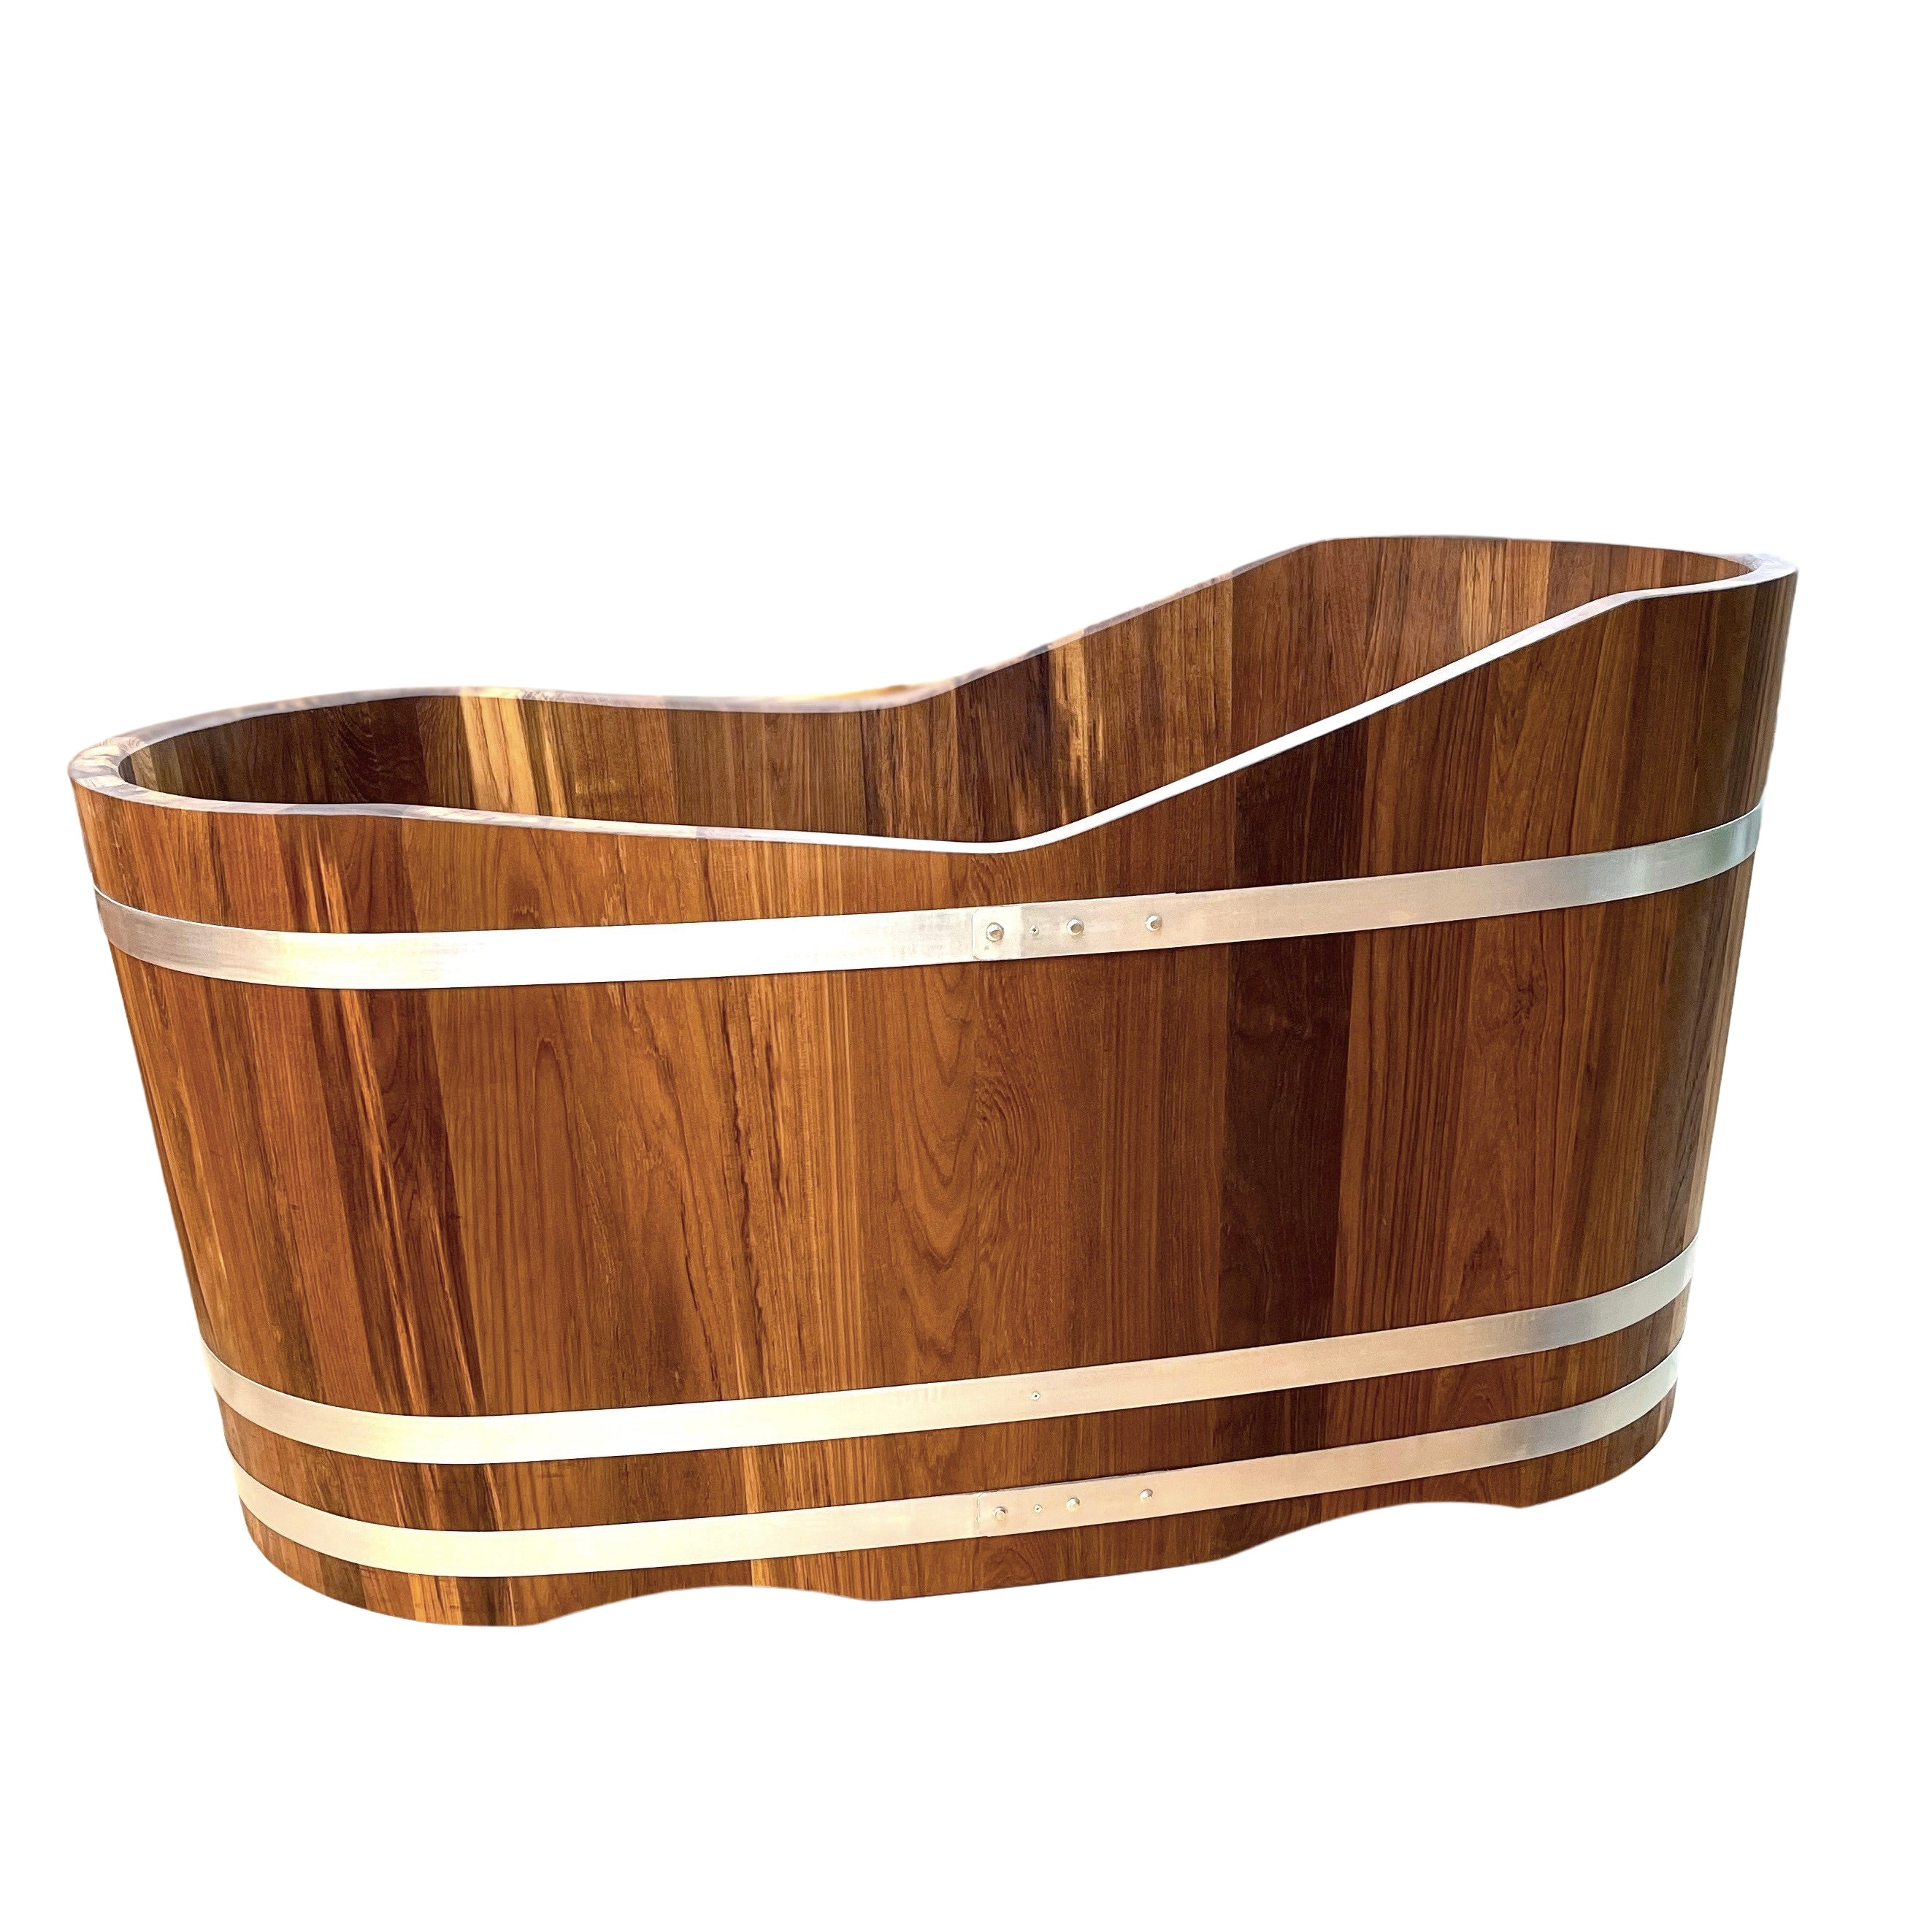 'TUB' wooden bathtub